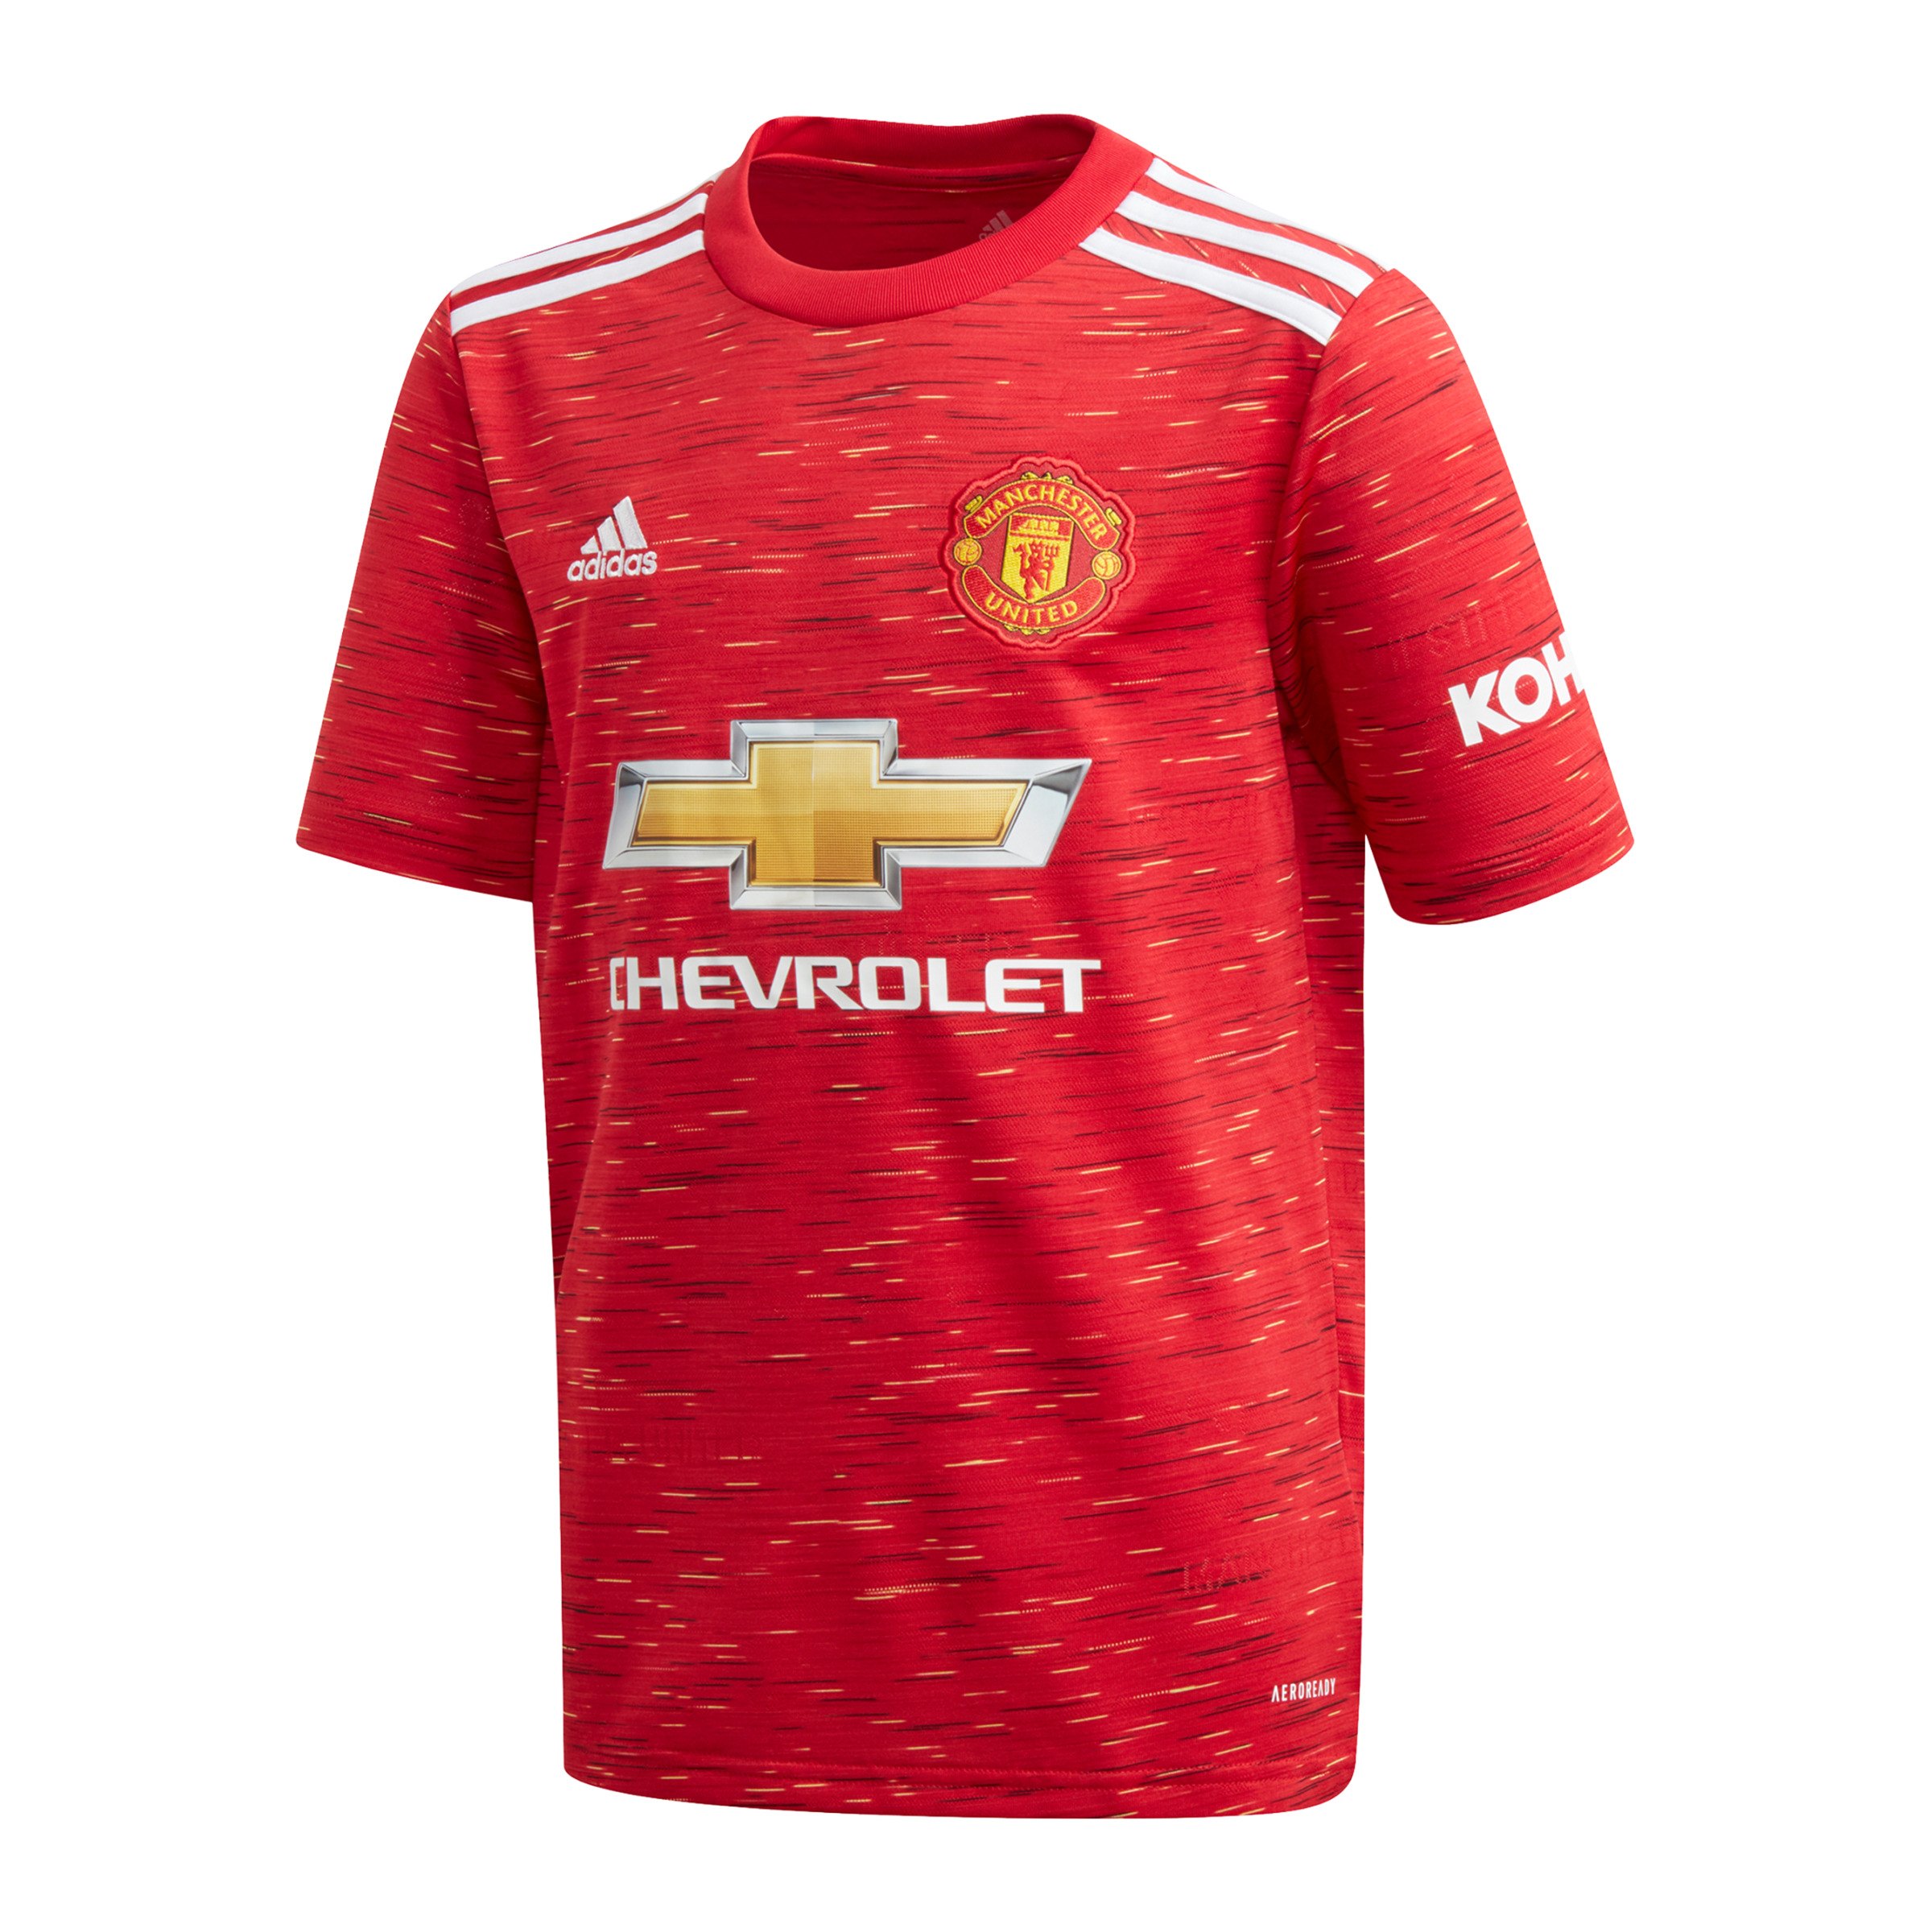 Manchester United Trikot - adidas Manchester United Heim Trikot 2015/16